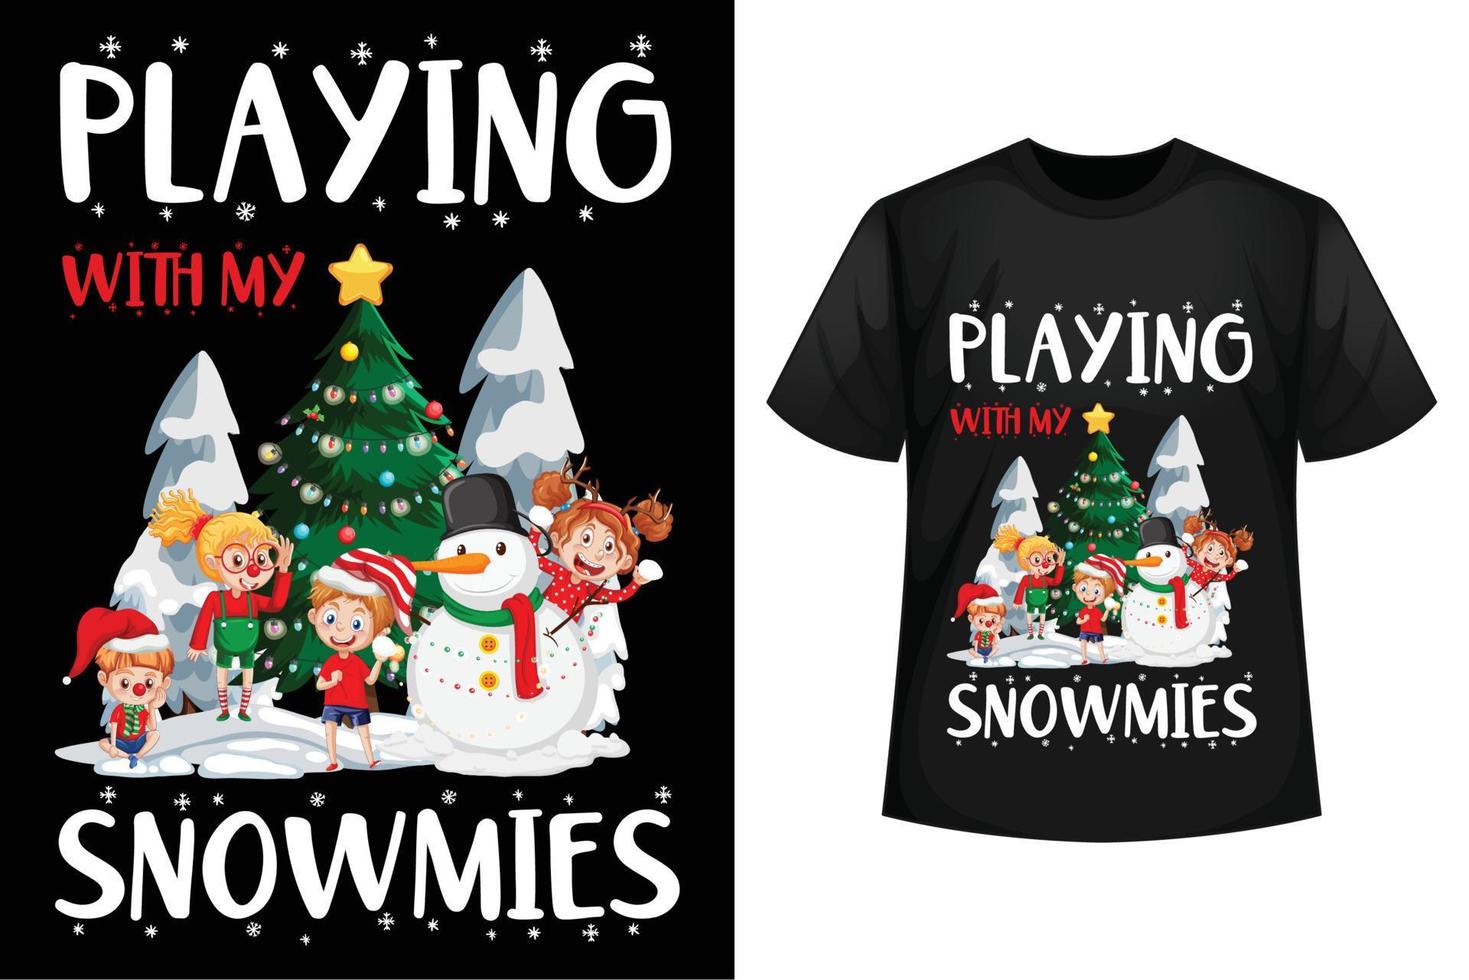 spelen met mijn sneeuwmies - Kerstmis t-shirt ontwerp sjabloon vector